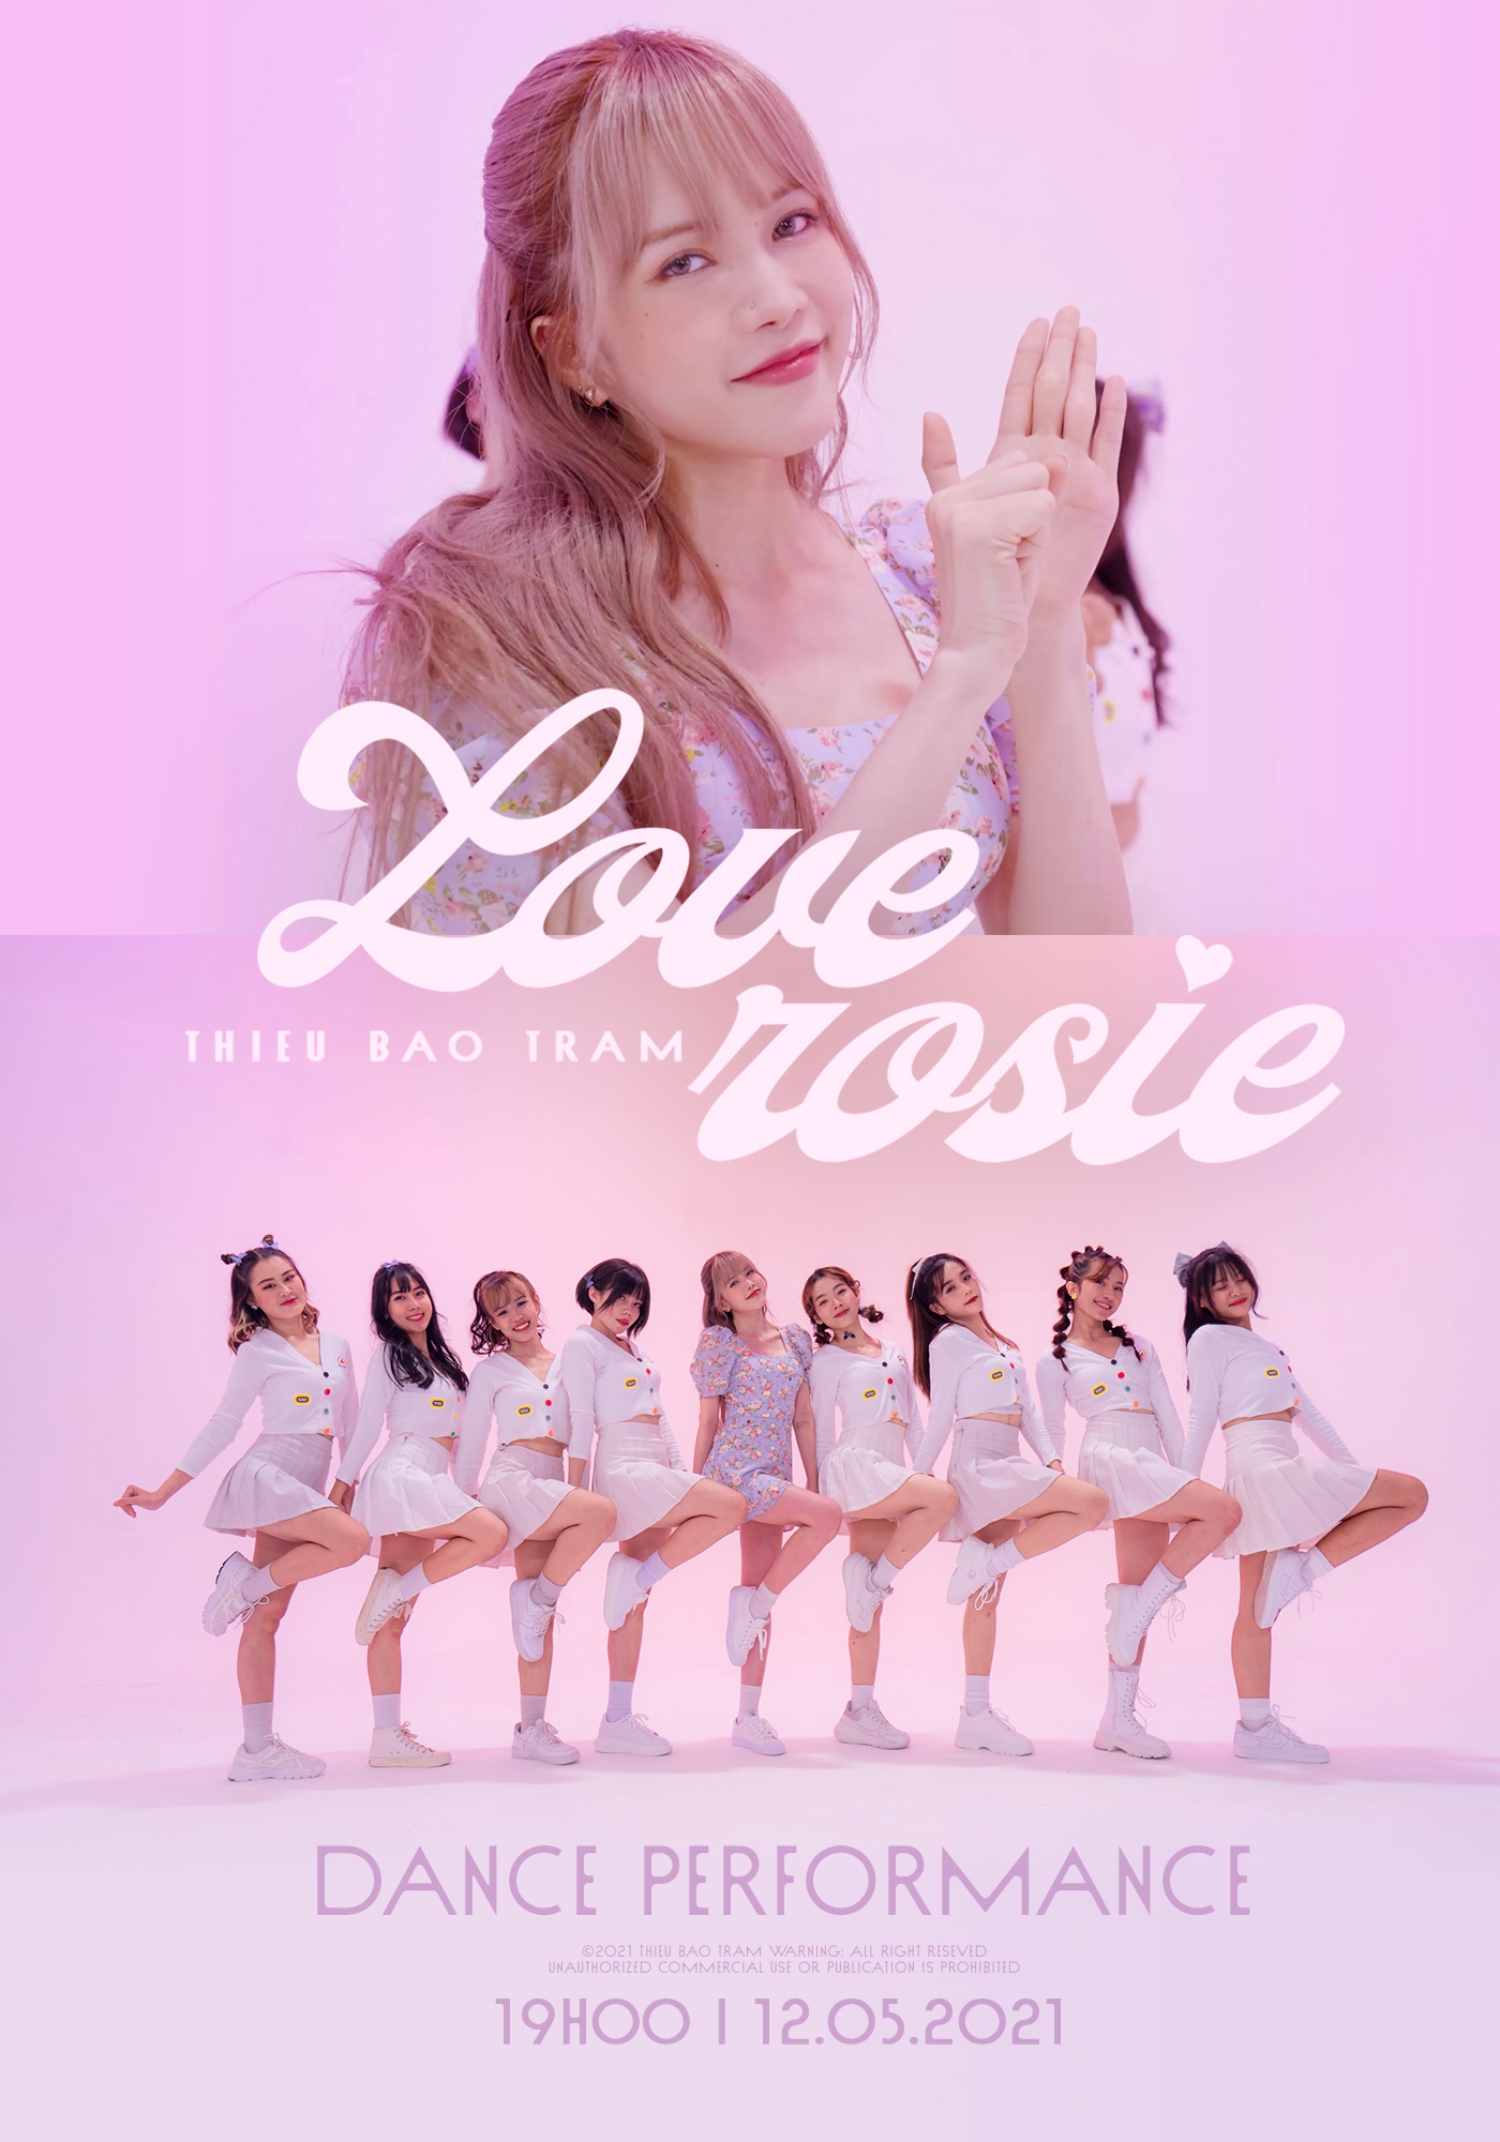 Không bỏ quên sở trường vũ đạo, Thiều Bảo Trâm tiếp tục quảng bá Love Rosie bằng phiên bản vũ điệu tỏ tình